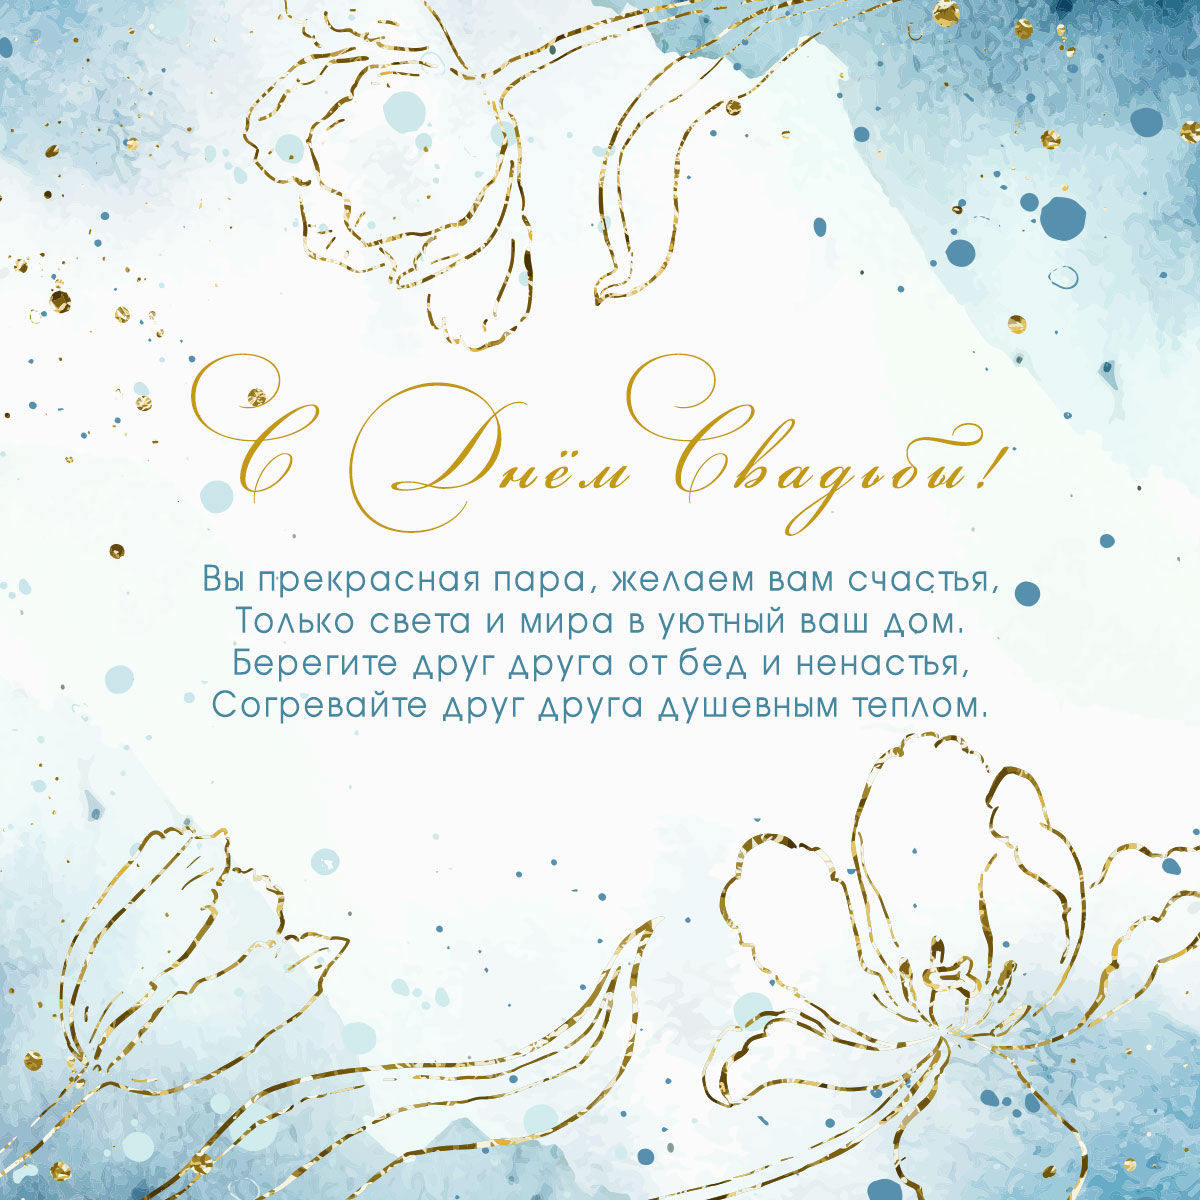 Голубая открытка с бракосочетанием поздравления и золотые цветы.